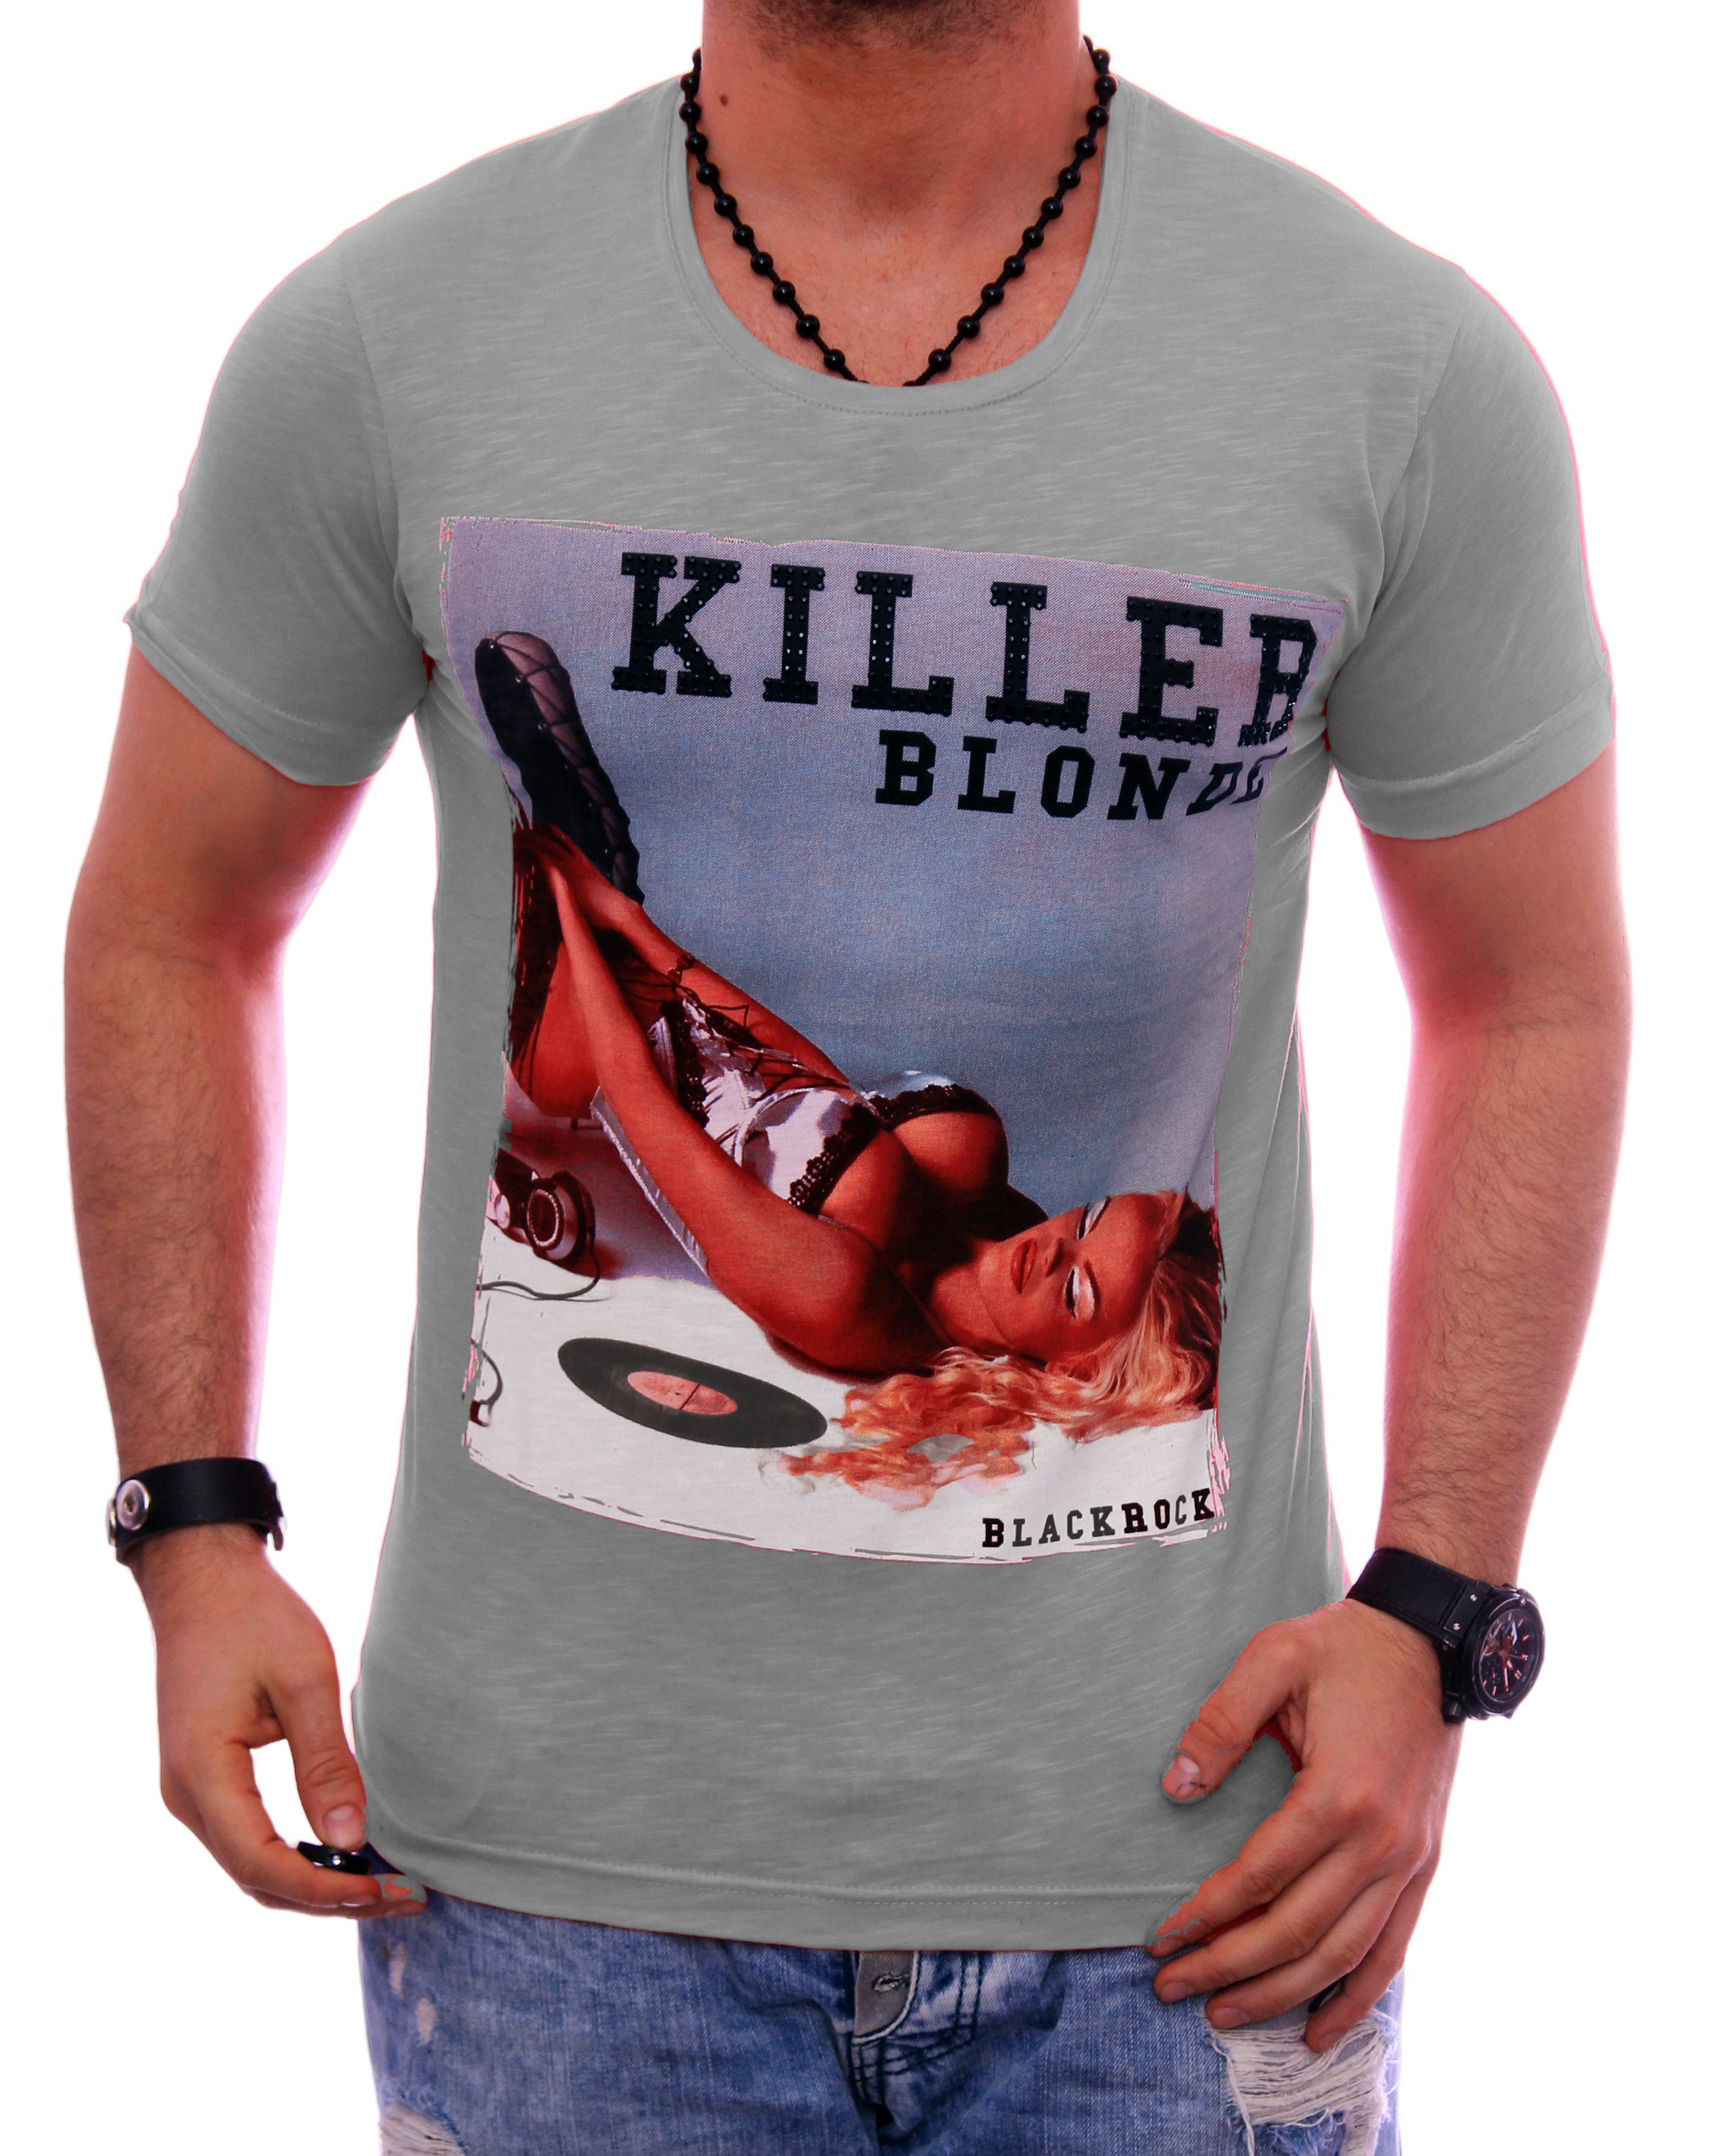 BLACKROCK T-Shirt Herren Shirt T-Shirt Urlaub Motiv kurzarm Rundhals bedruckt Print Strasssteine Slim-Fit Grau